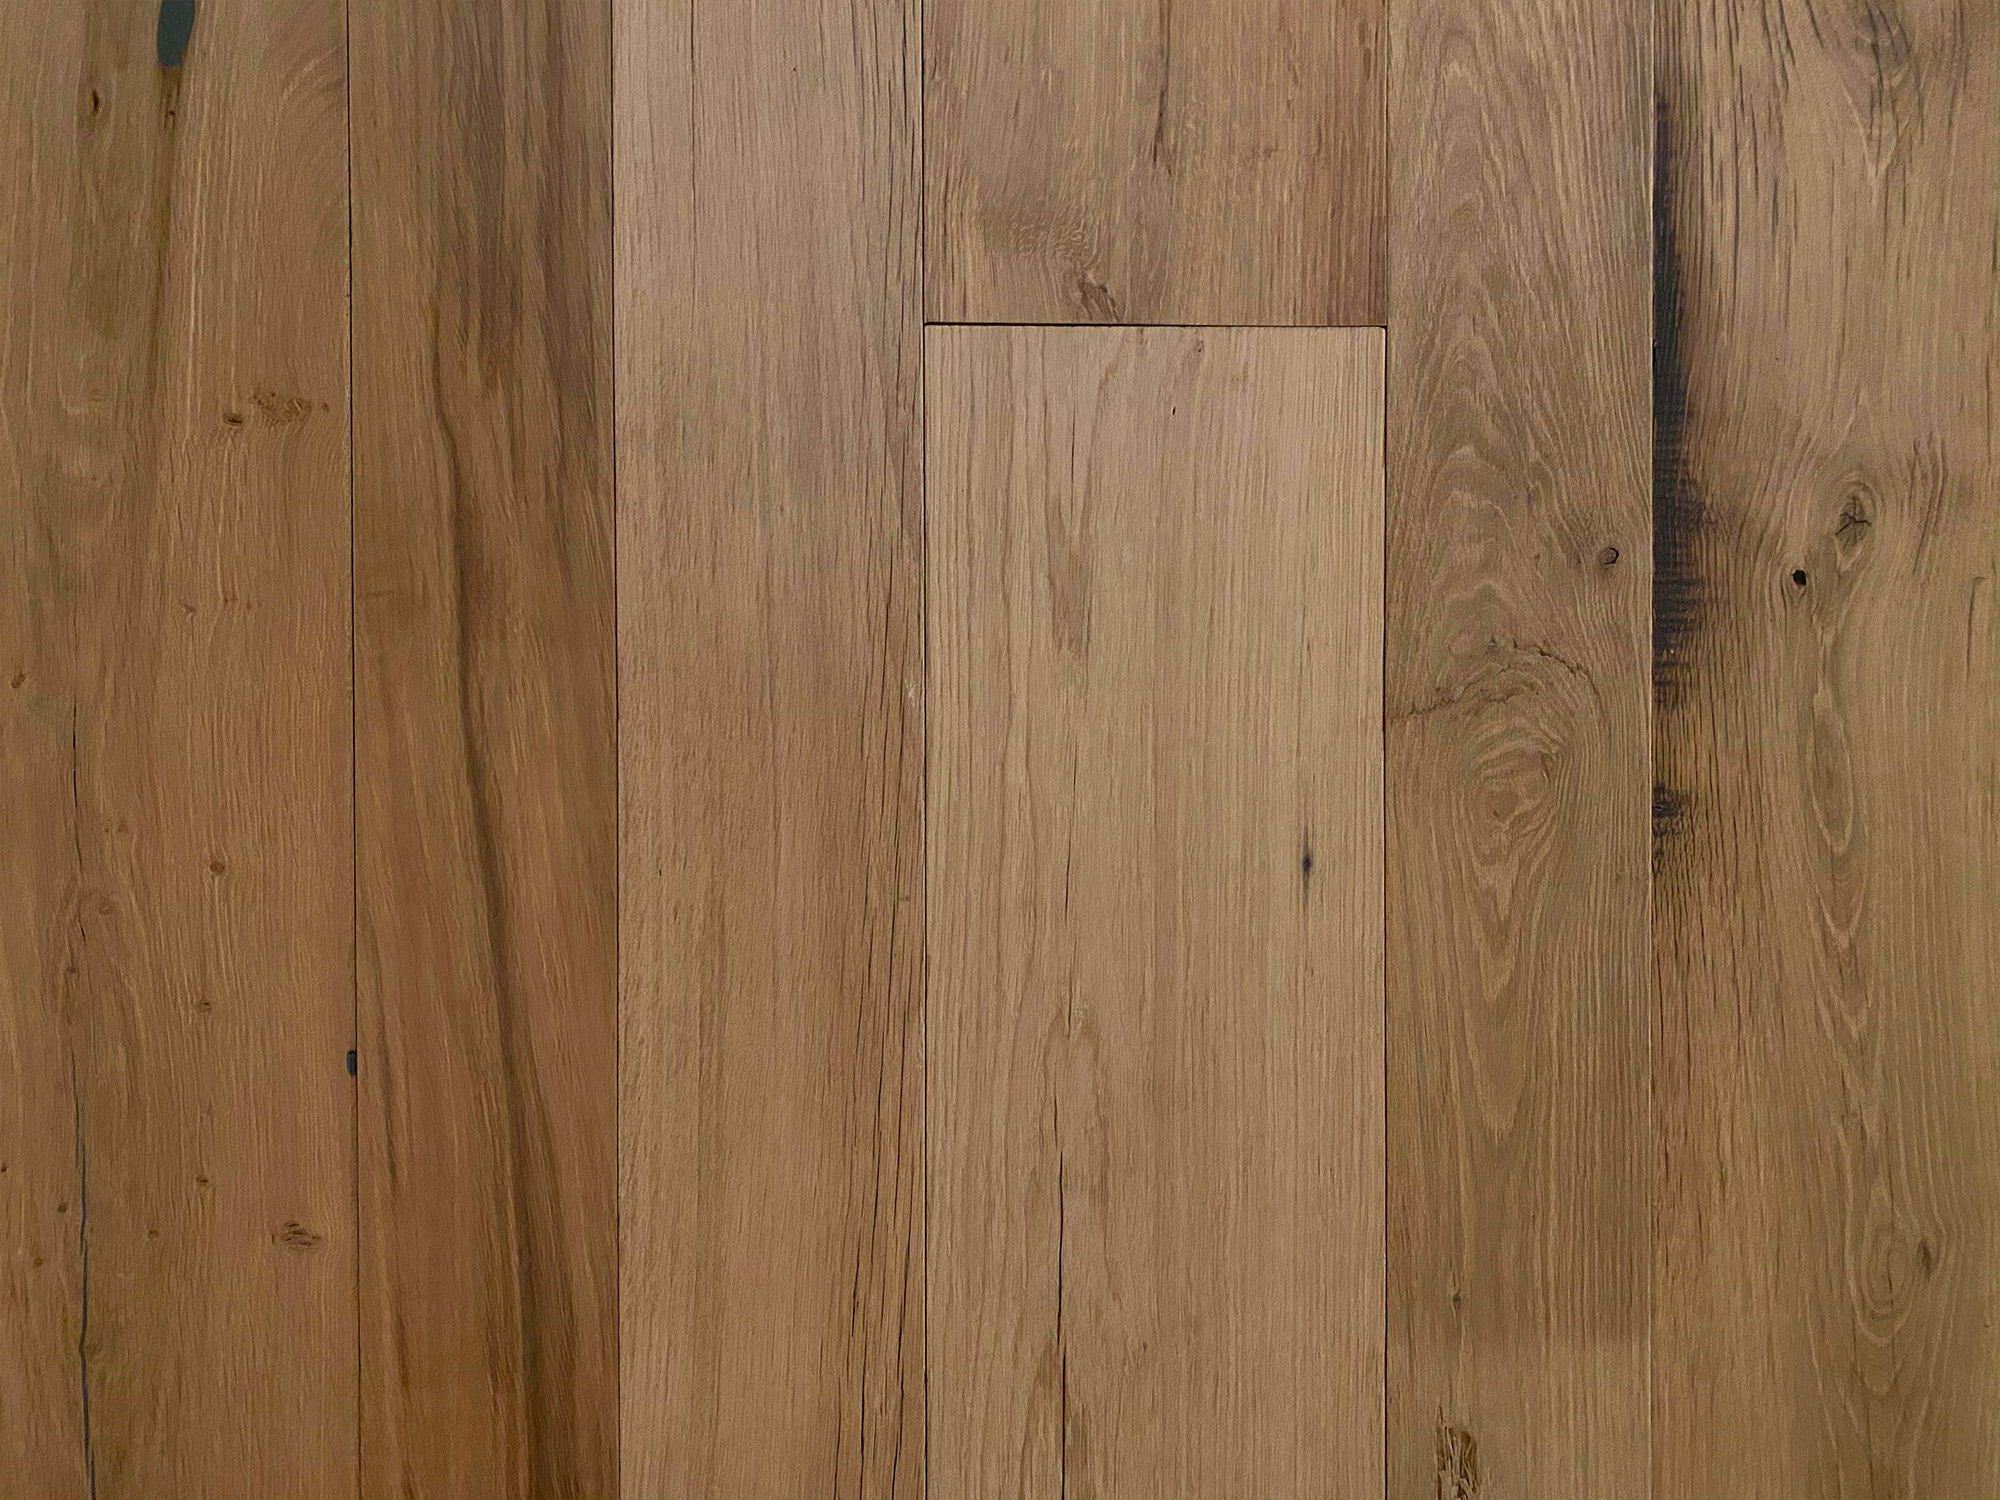 Reclaimed flooring in clean oak finish